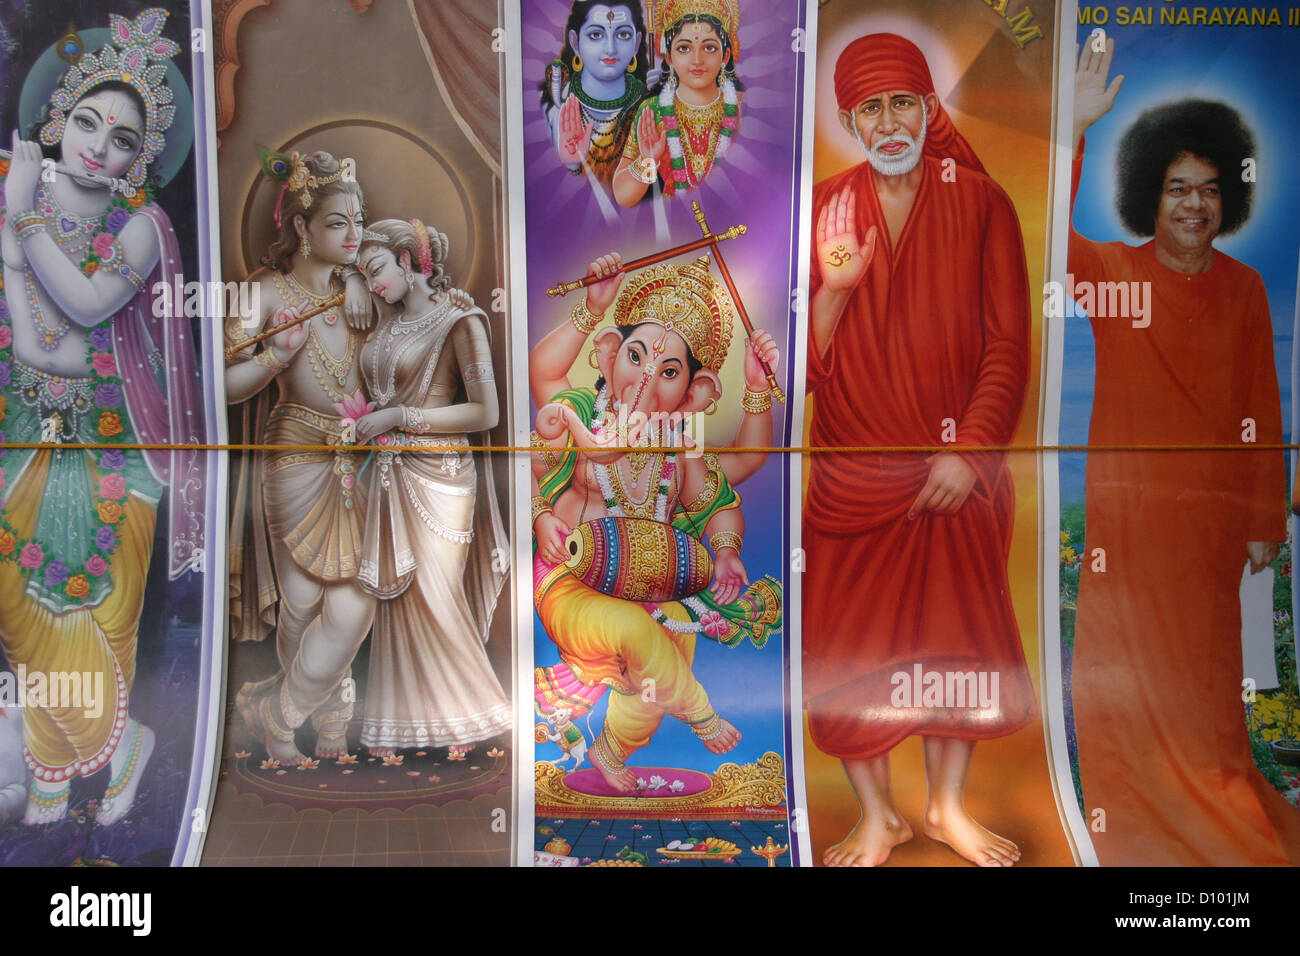 Bilder von Hindu Götter (von links nach rechts) Krishna, Krishna und Radha, Ganesh, Shirdi Sai Baba und Sathya Sai Baba. Stockfoto